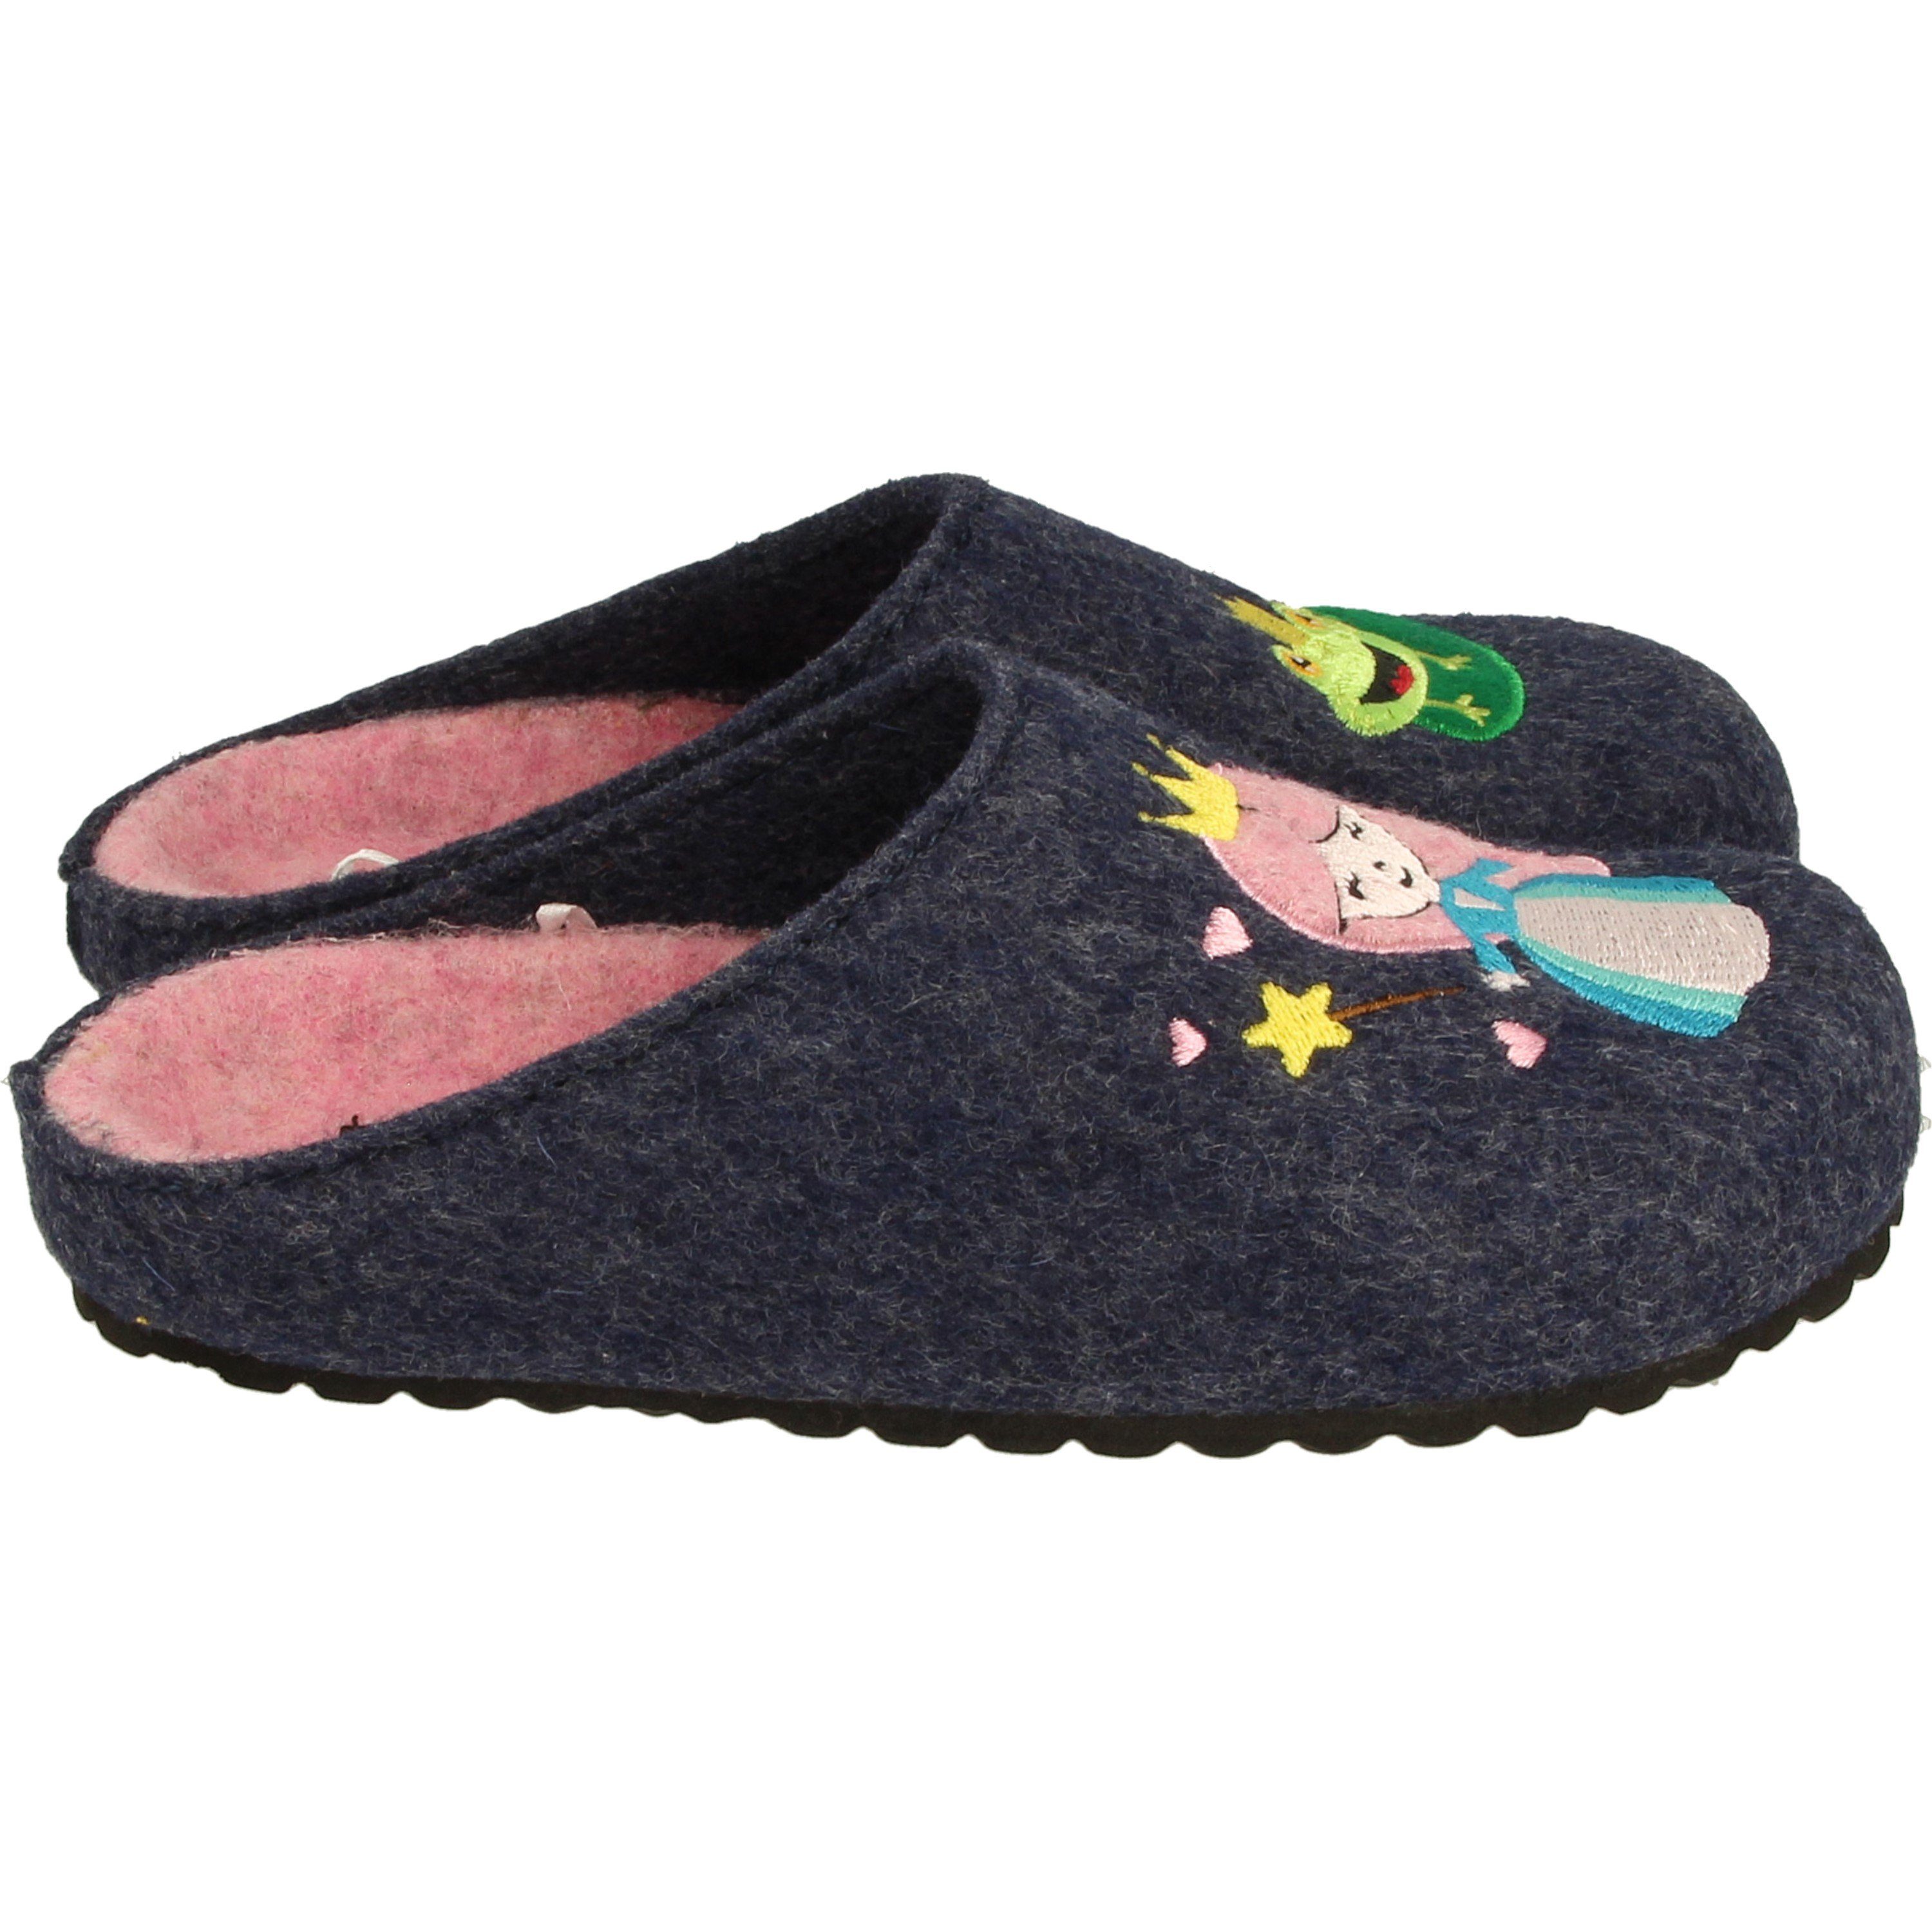 SUPERSOFT Mädchen Schuhe 542-274 Pantoffeln Prinzessin Clogs Motiv Hausschuhe Navy Clog